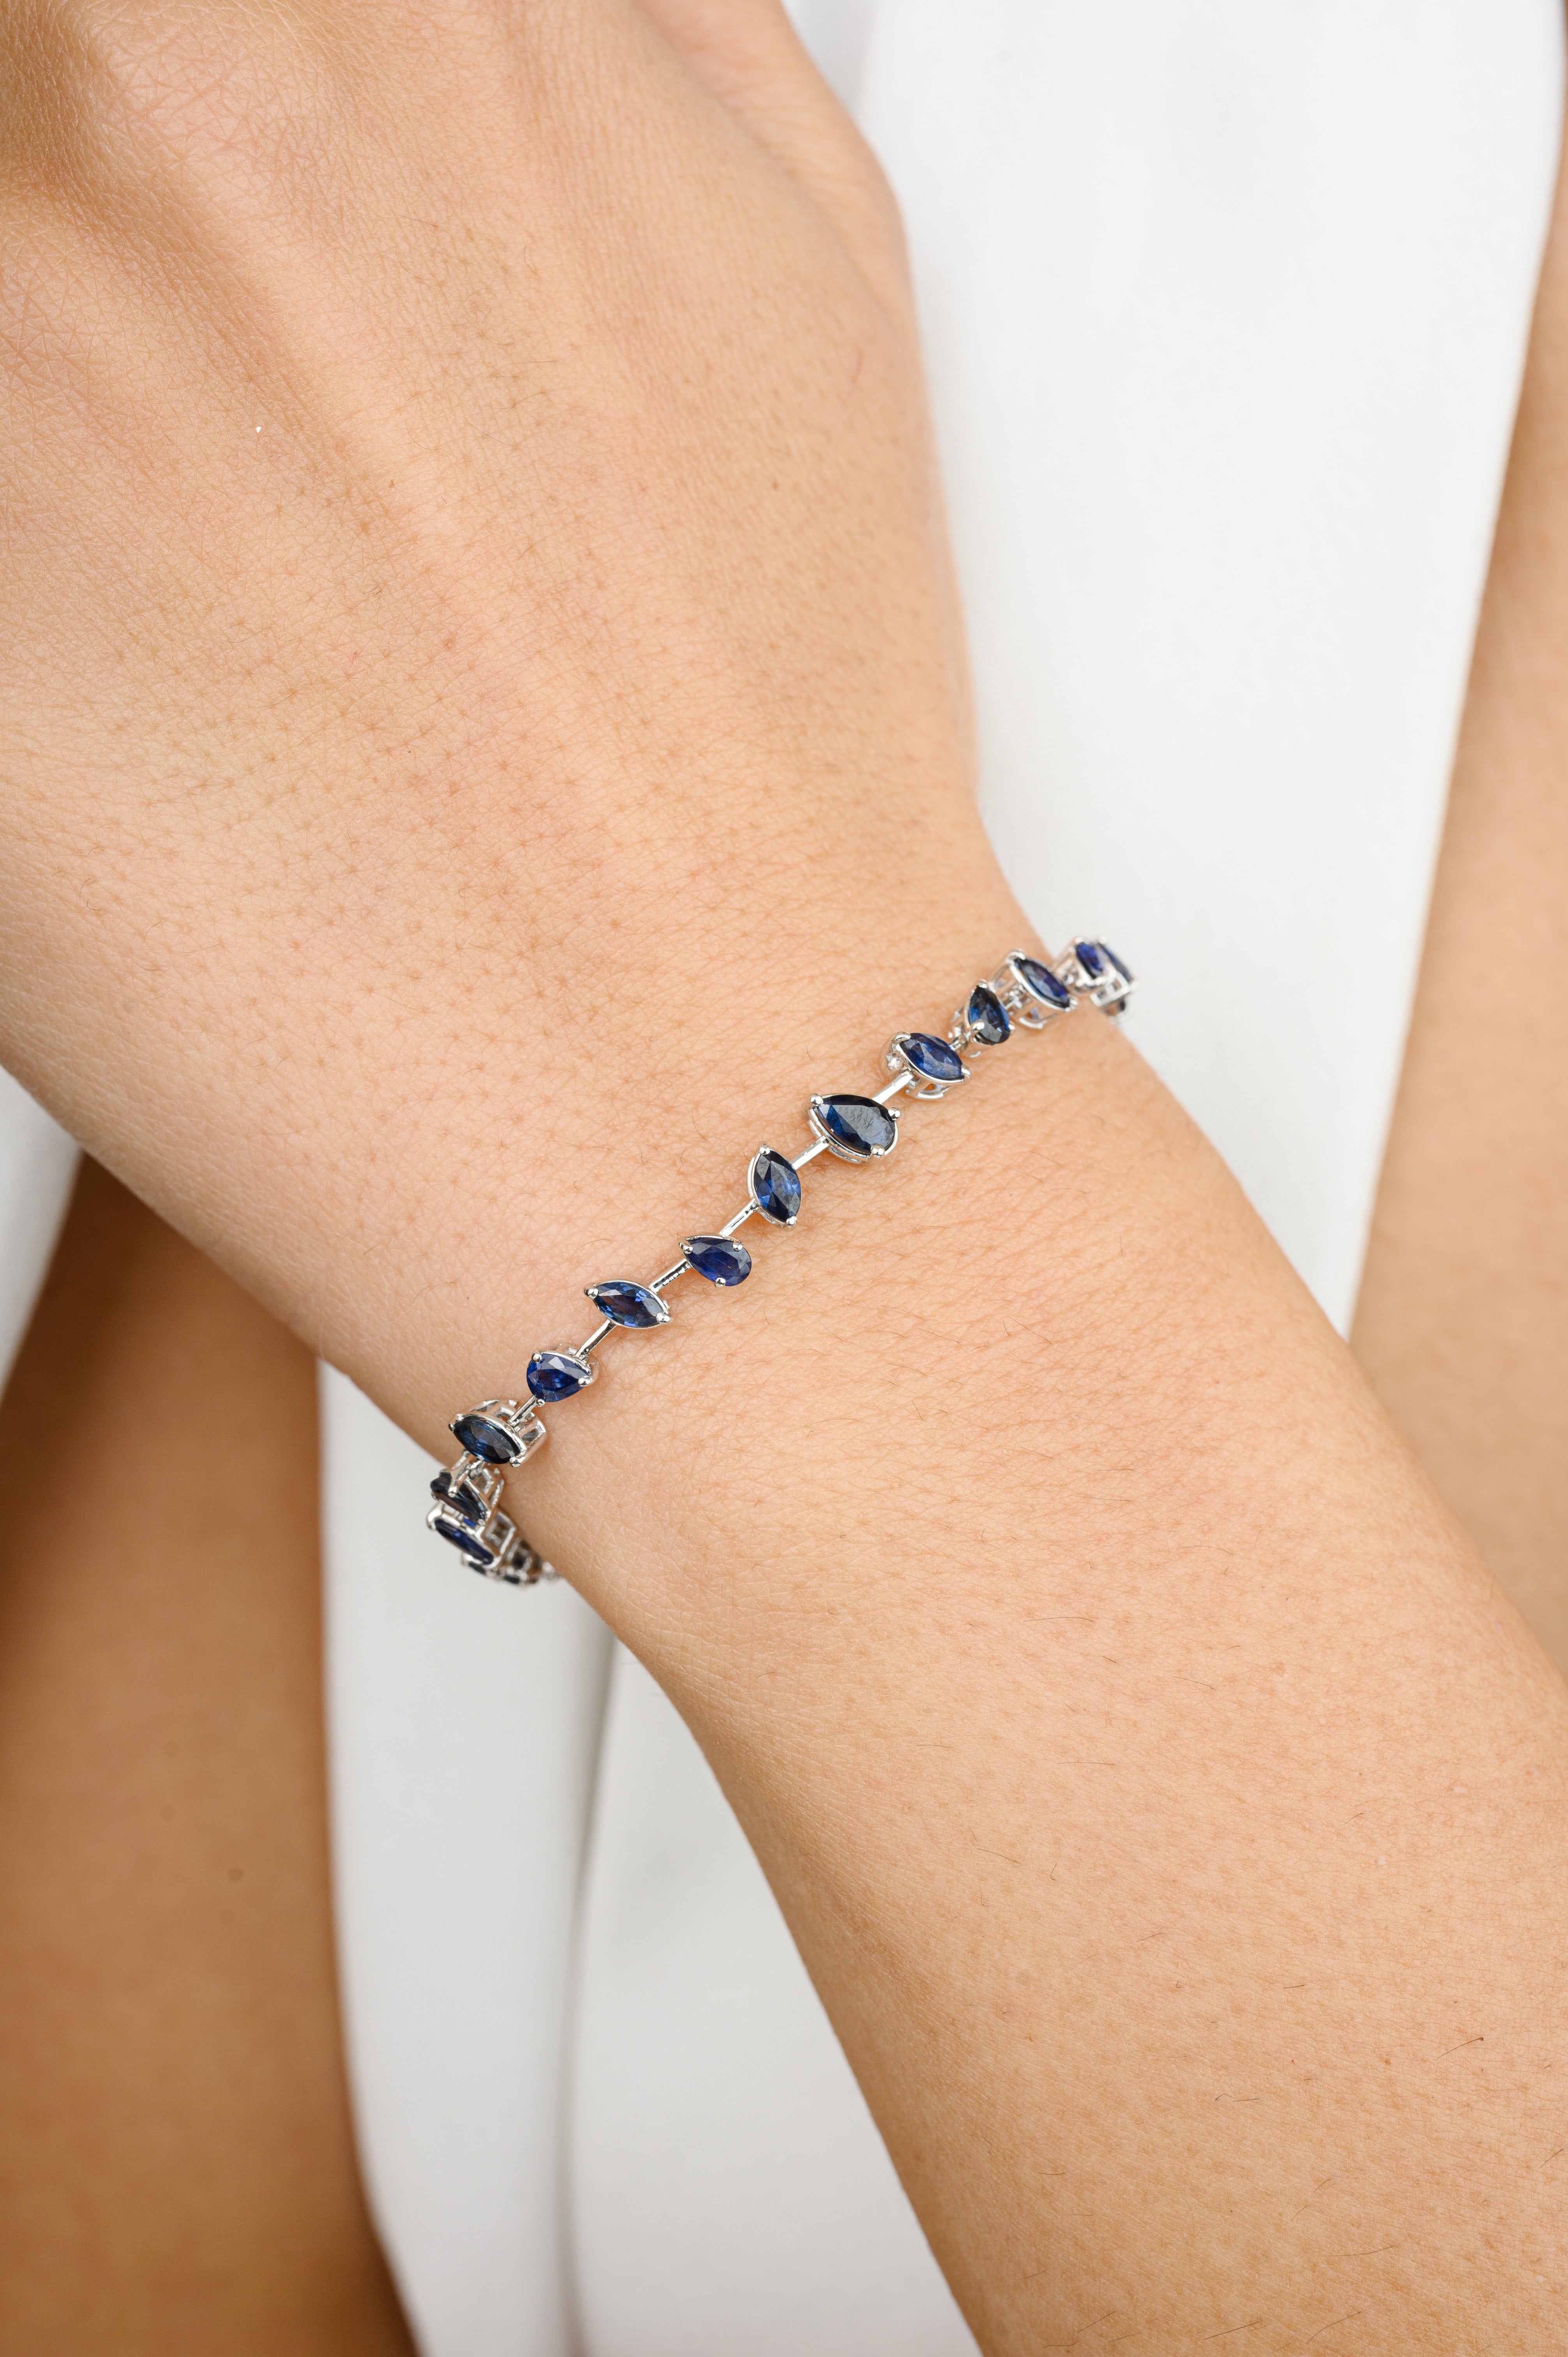 Unique Blue Sapphire Tennis Bracelet